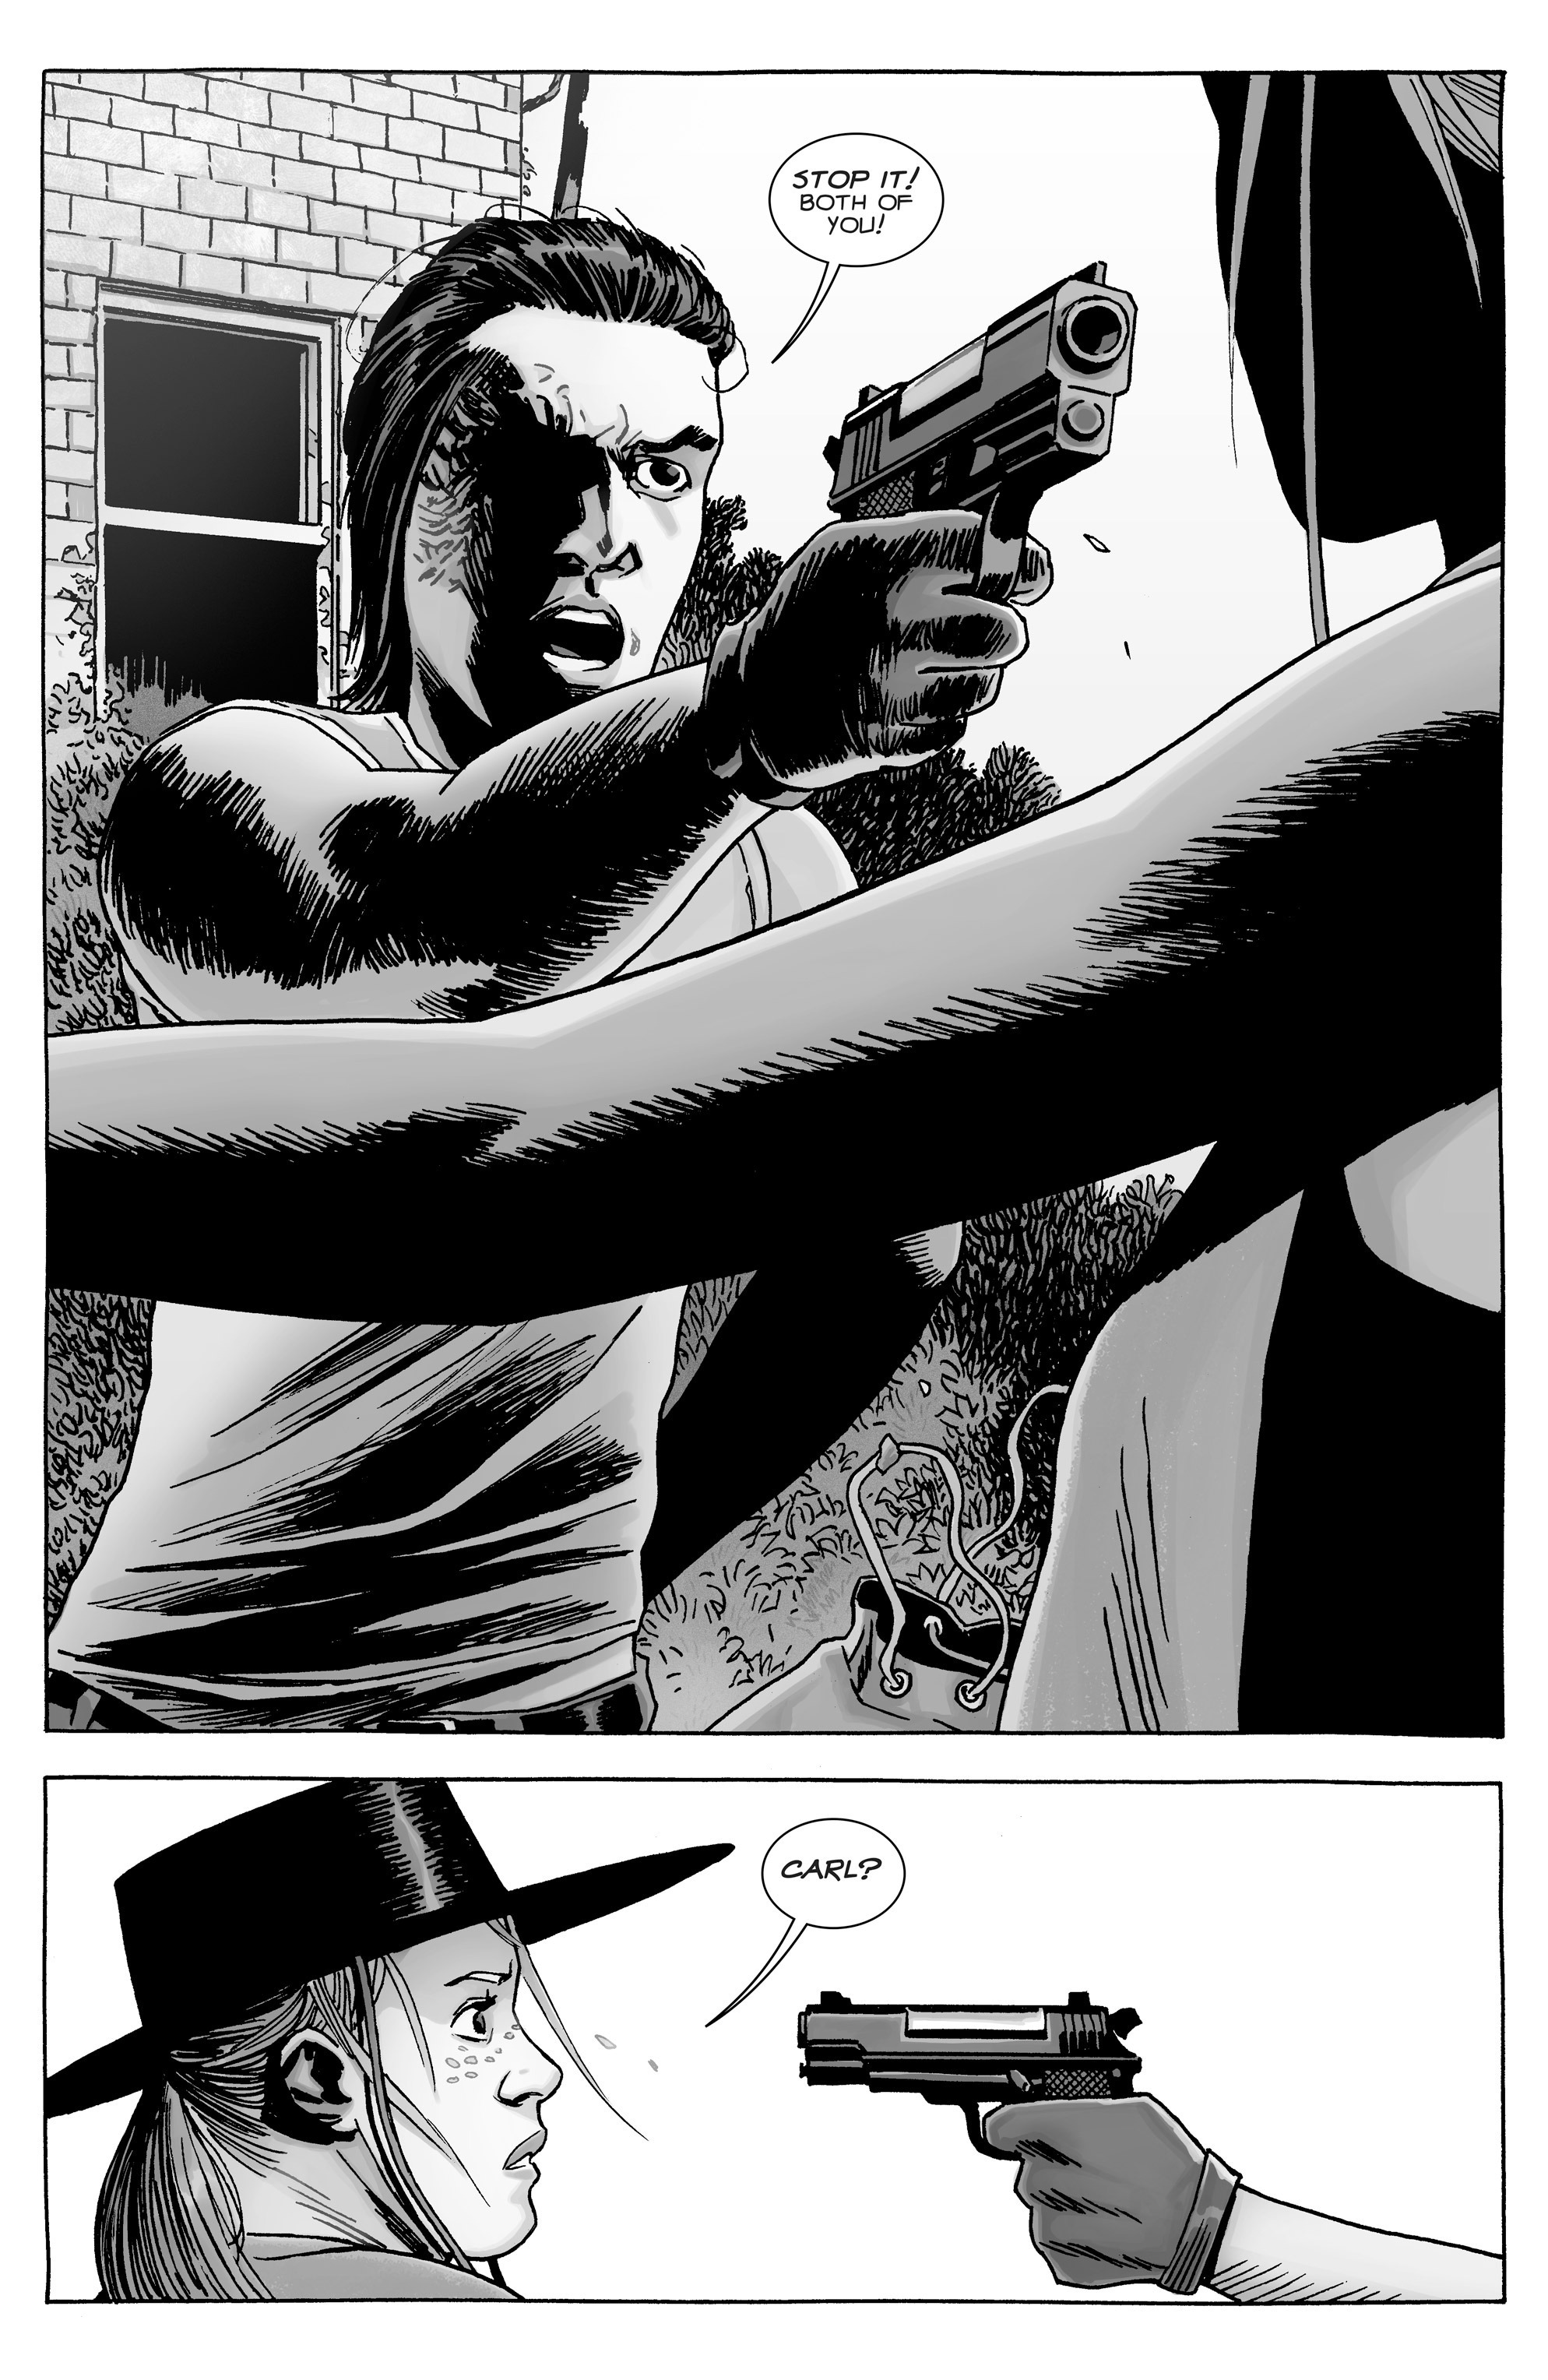 Read online The Walking Dead comic -  Issue #148 - 4